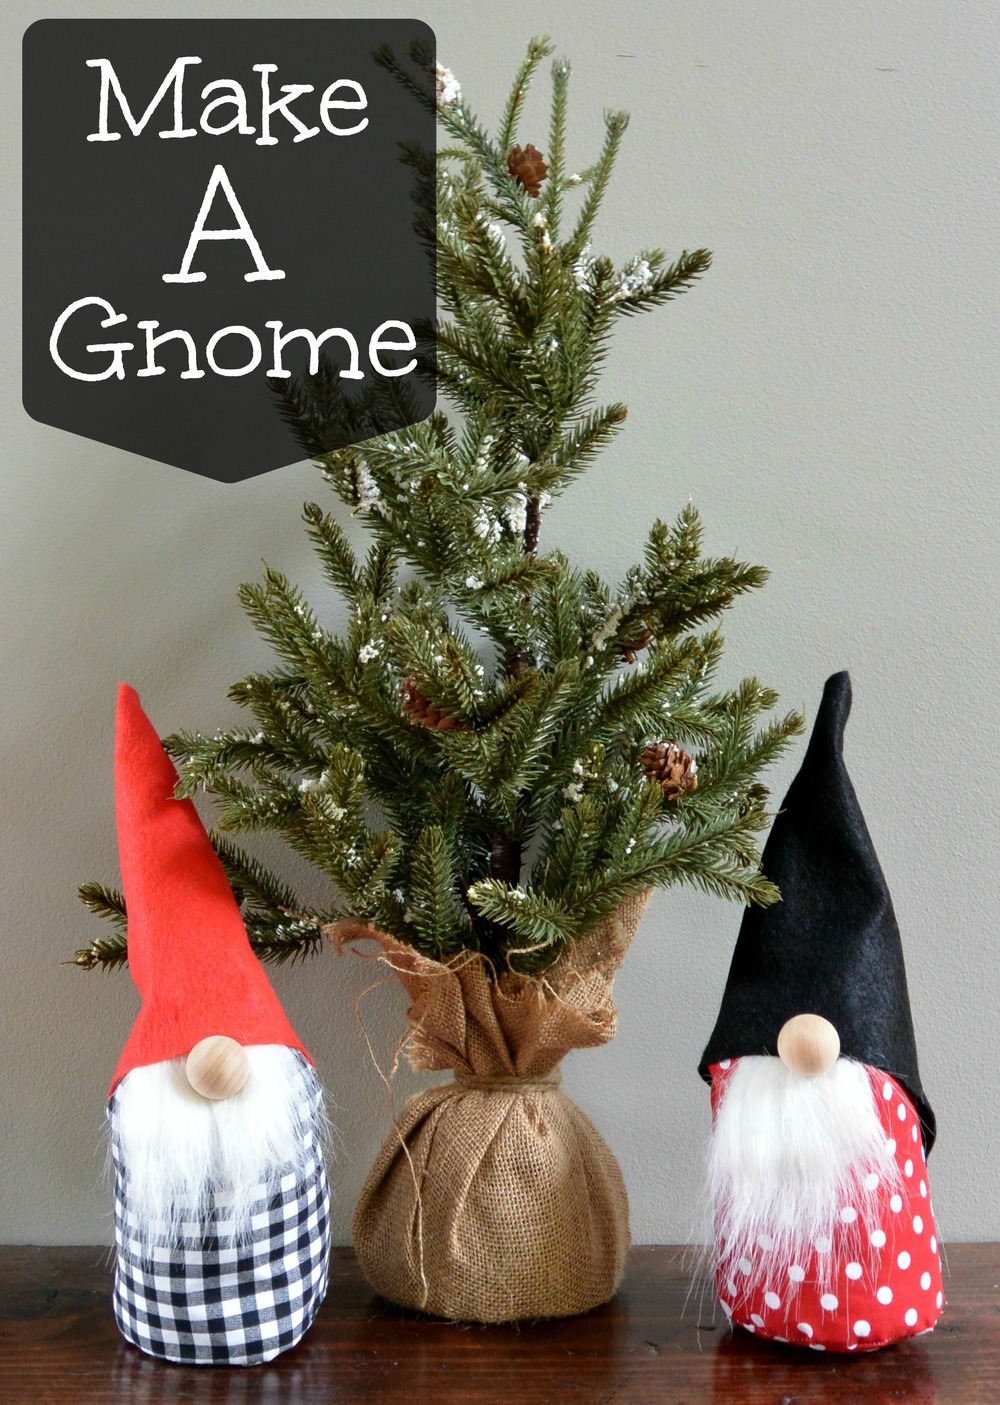 Make a Gnome